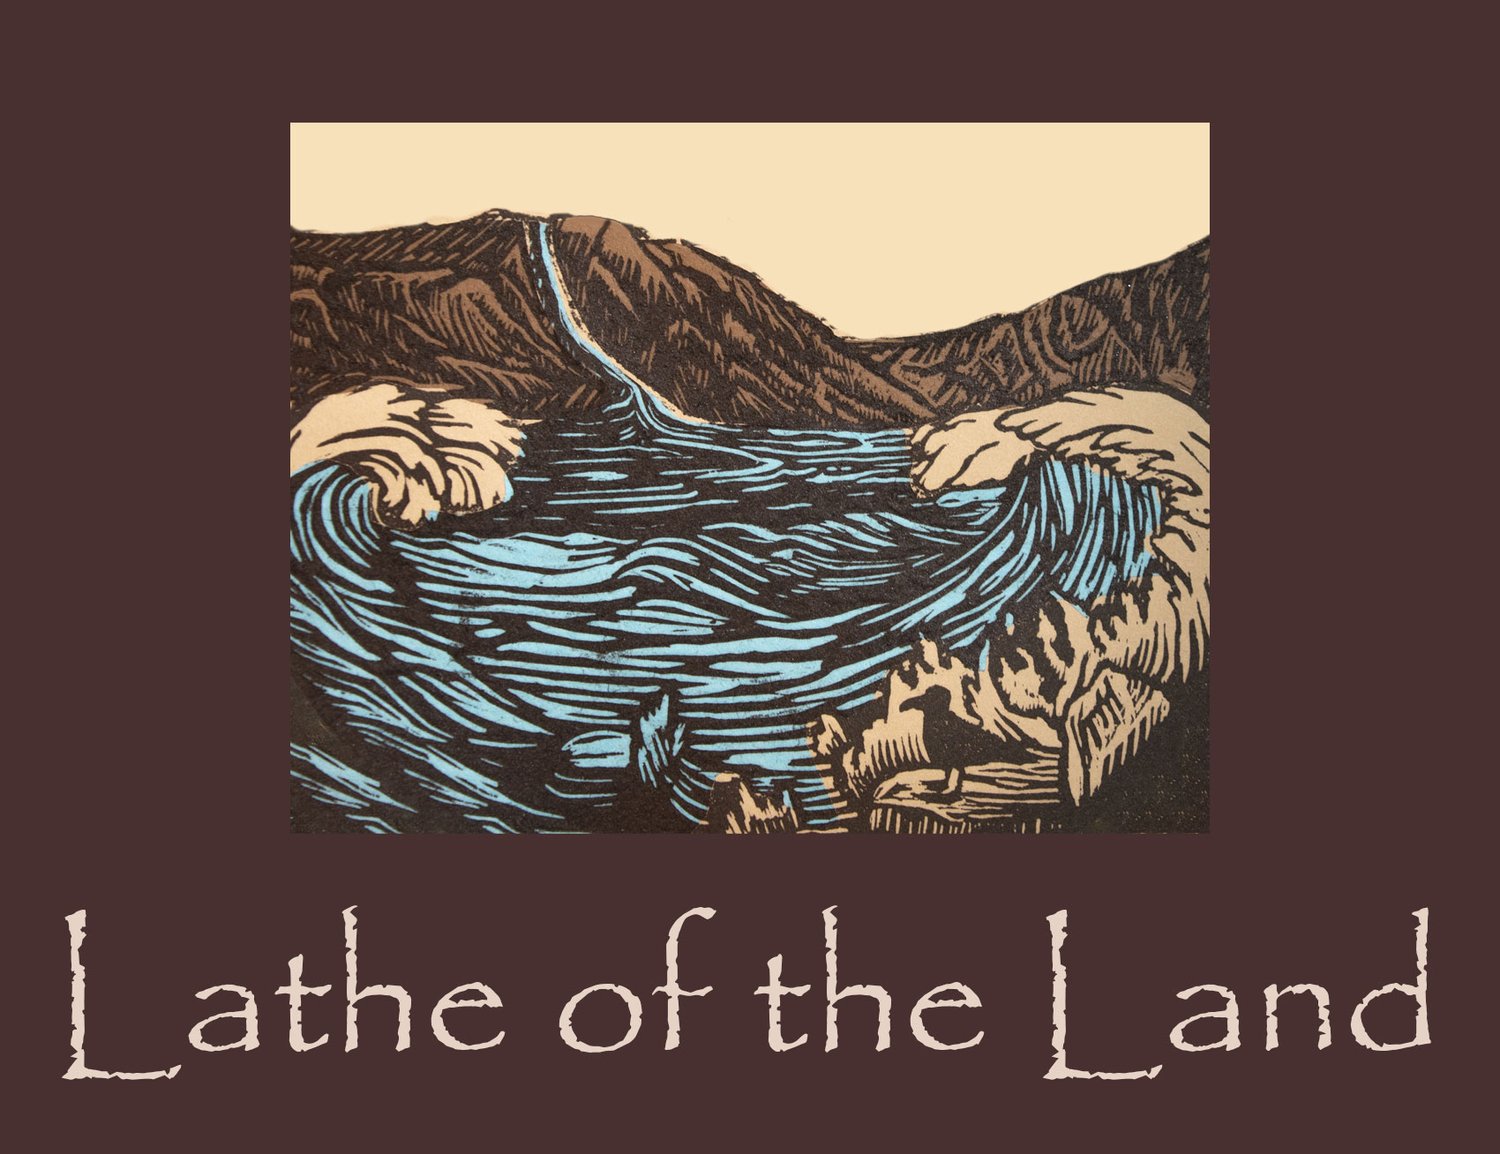 Lathe of the Land